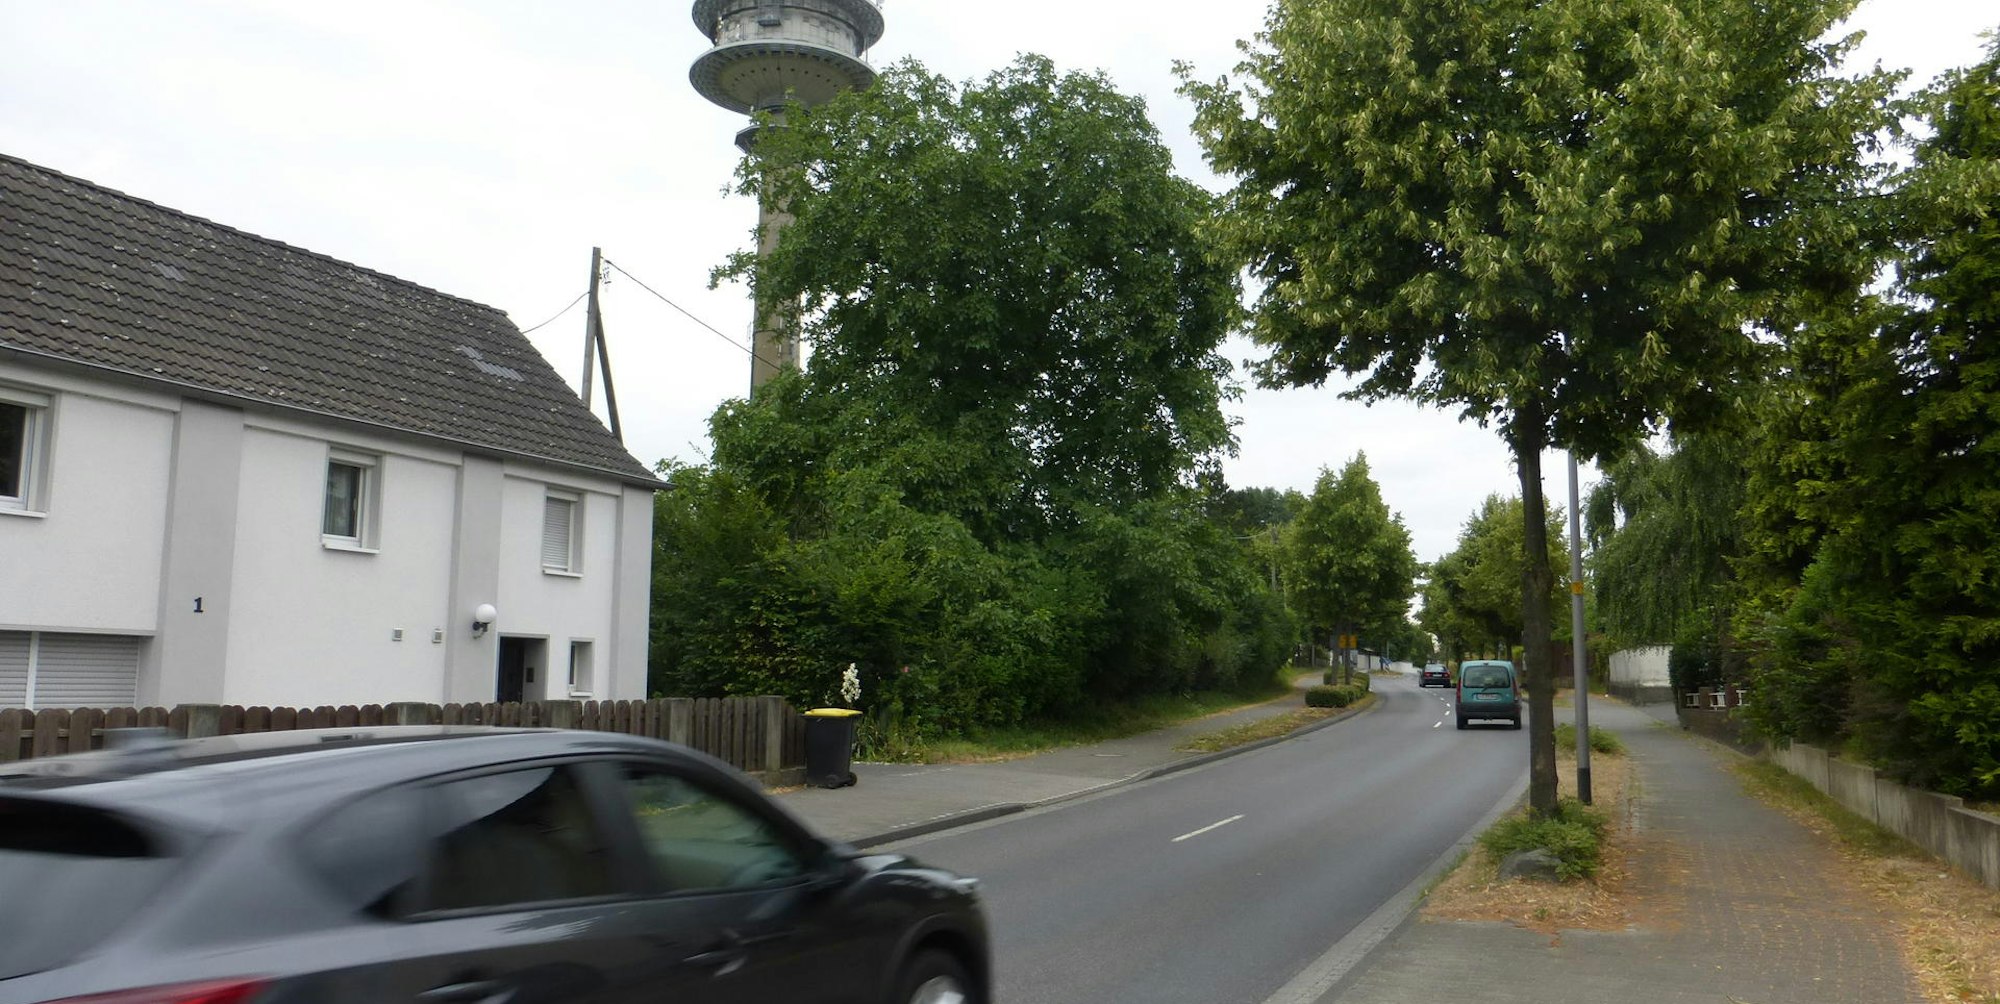 Nahe am weit bekannten Birker Fernmeldeturm soll links der Bundesstraße 56 , wo die grünen Büsche mit dem Baum stehen (Bildmitte), ein Autohaus gebaut werden.